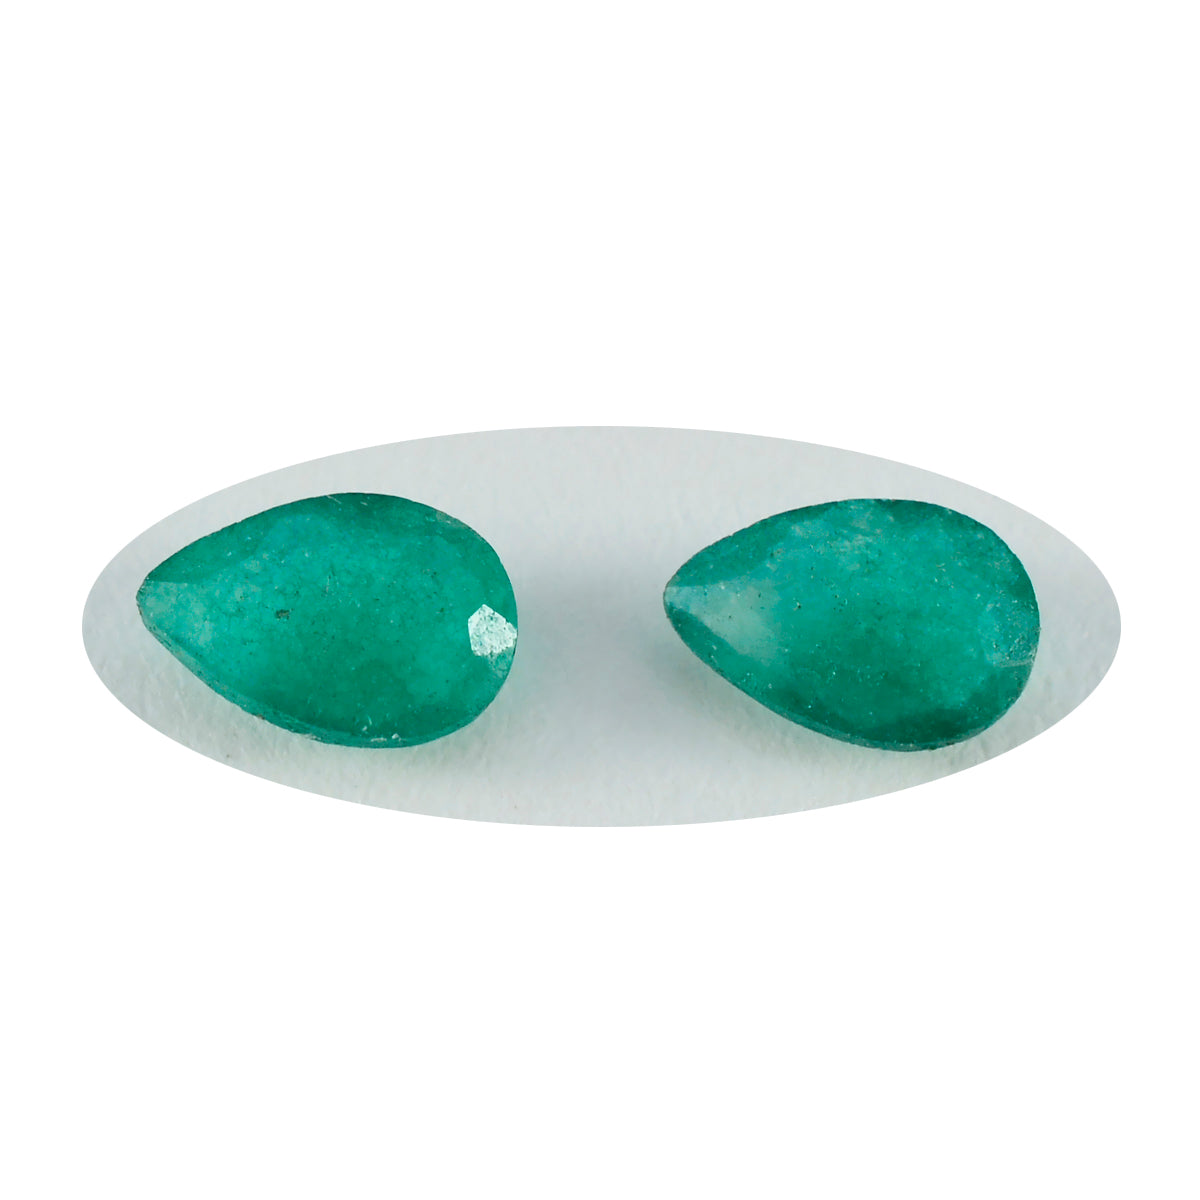 riyogems 1 шт., натуральная зеленая яшма, граненая 5x7 мм, грушевидная форма, милые качественные драгоценные камни